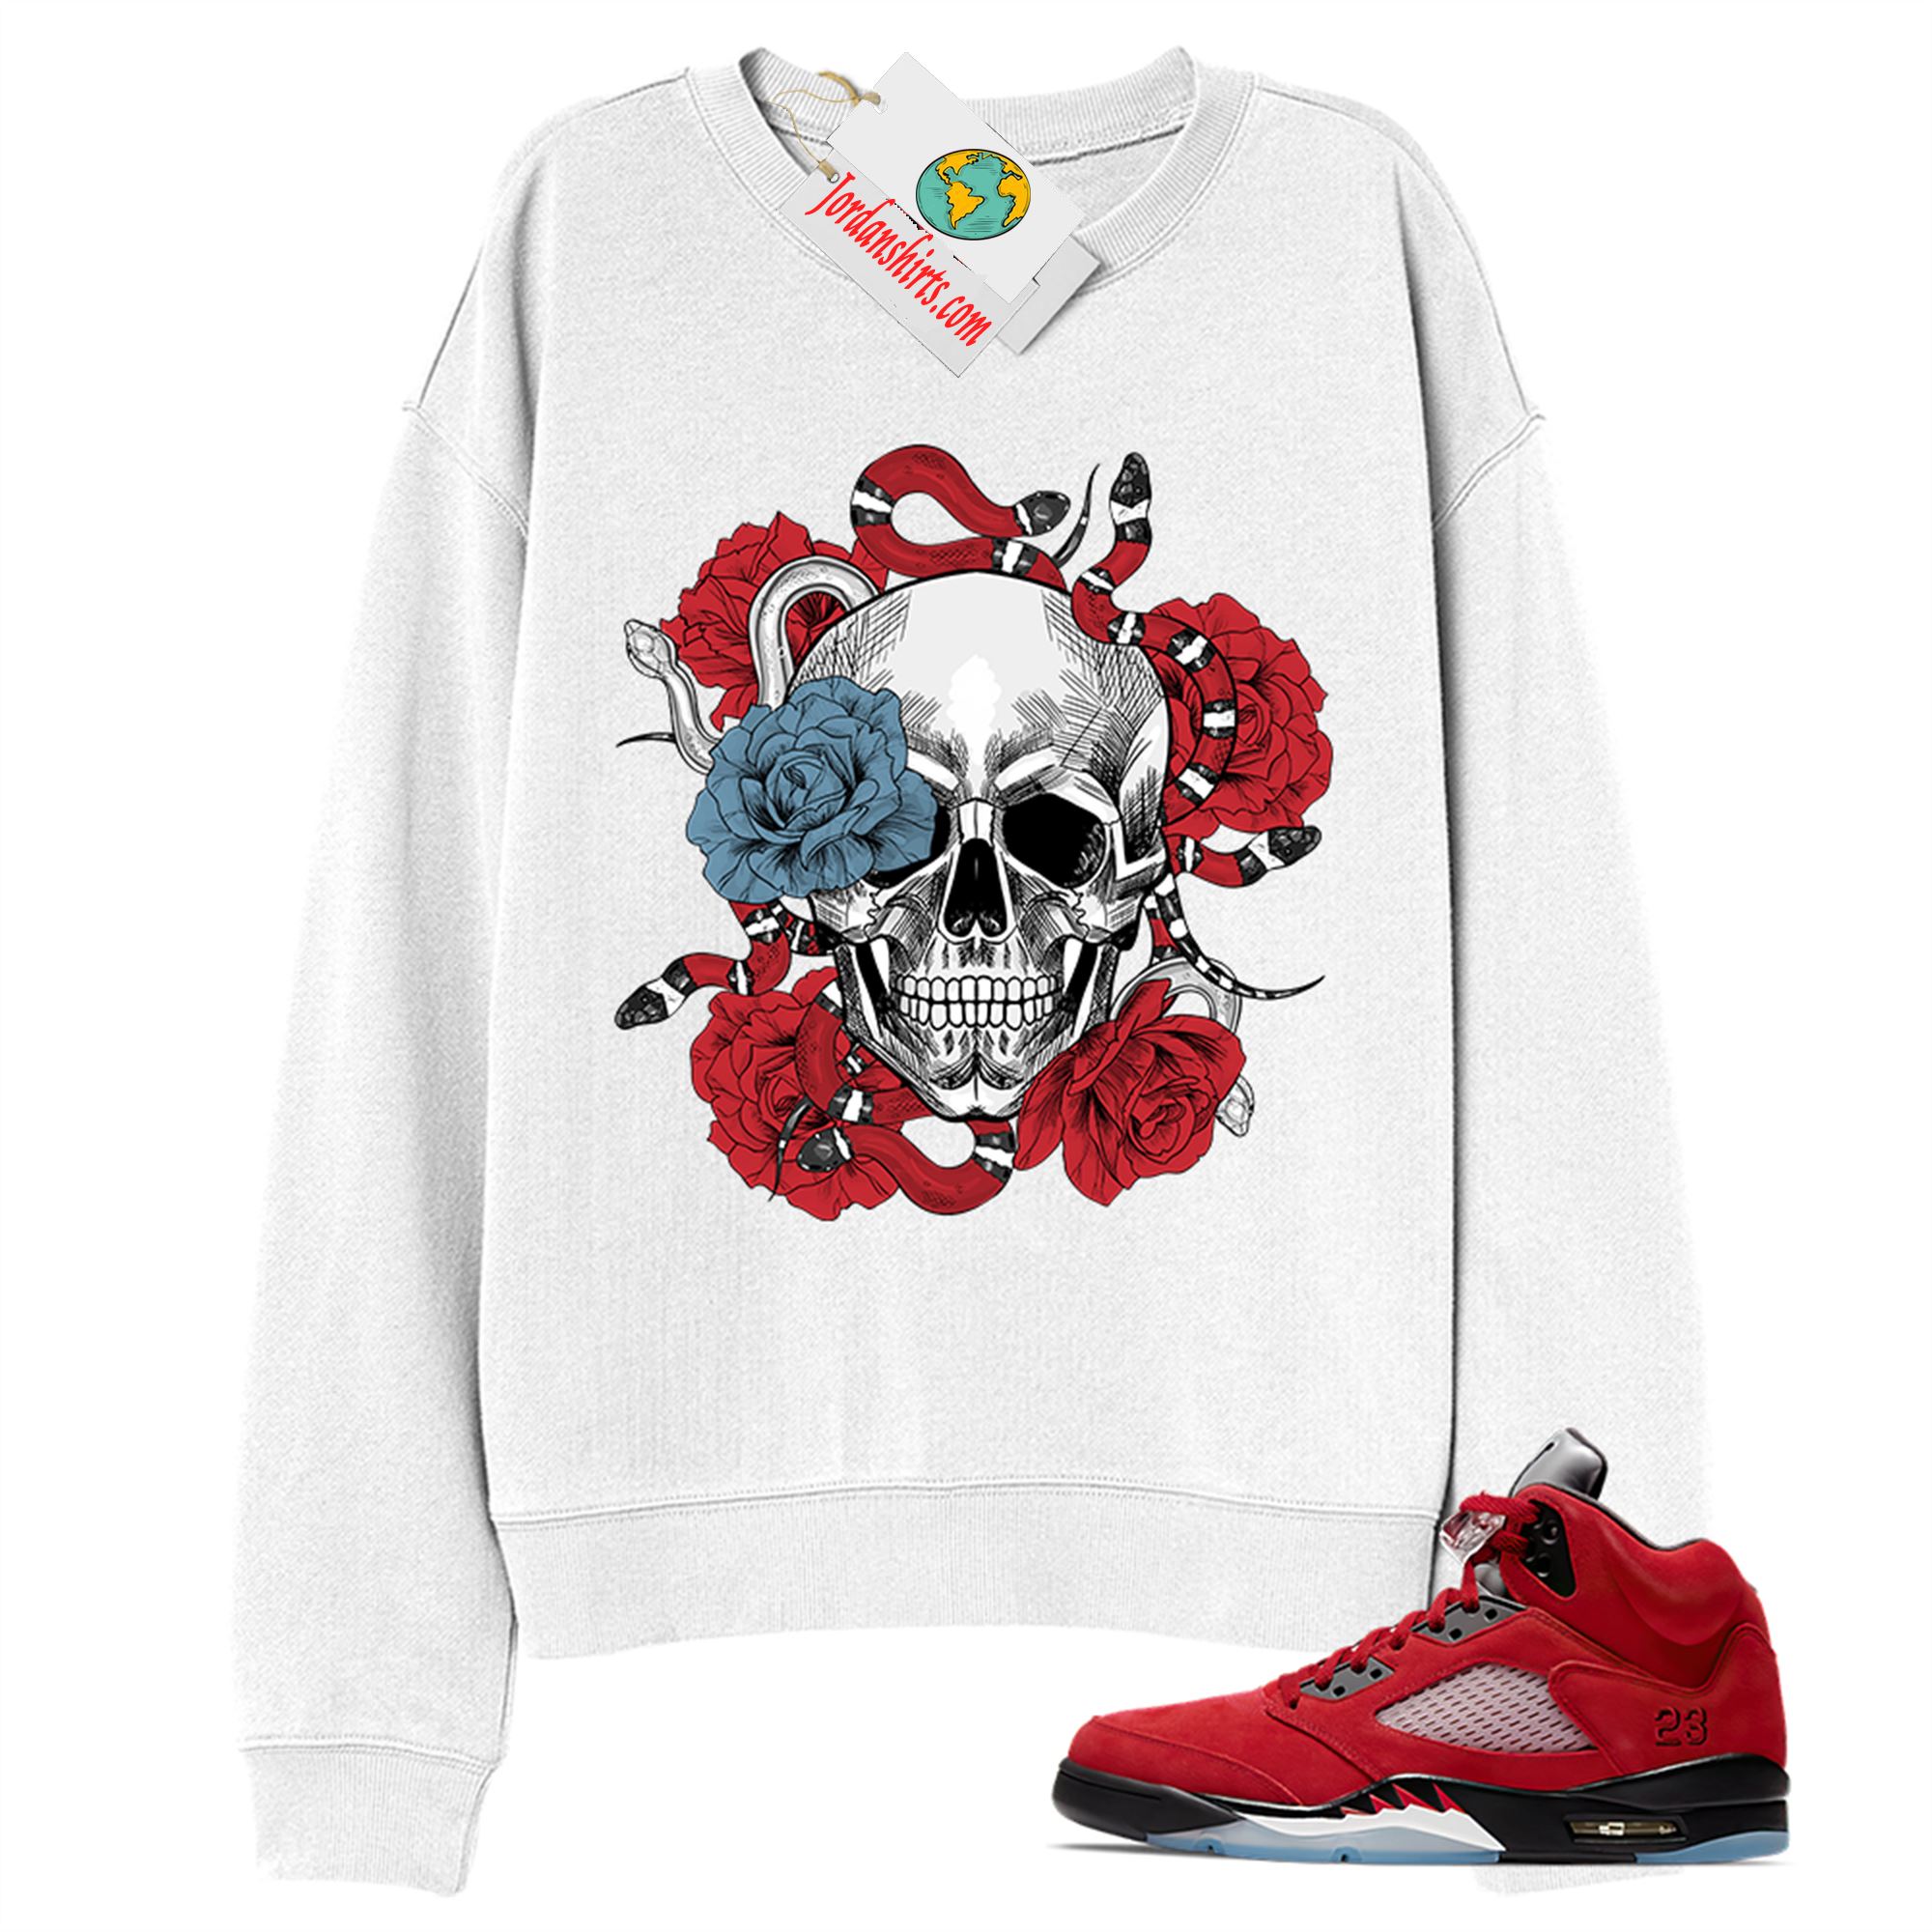 Jordan 5 Sweatshirt, Snake Skull Rose White Sweatshirt Air Jordan 5 Raging Bull 5s Size Up To 5xl